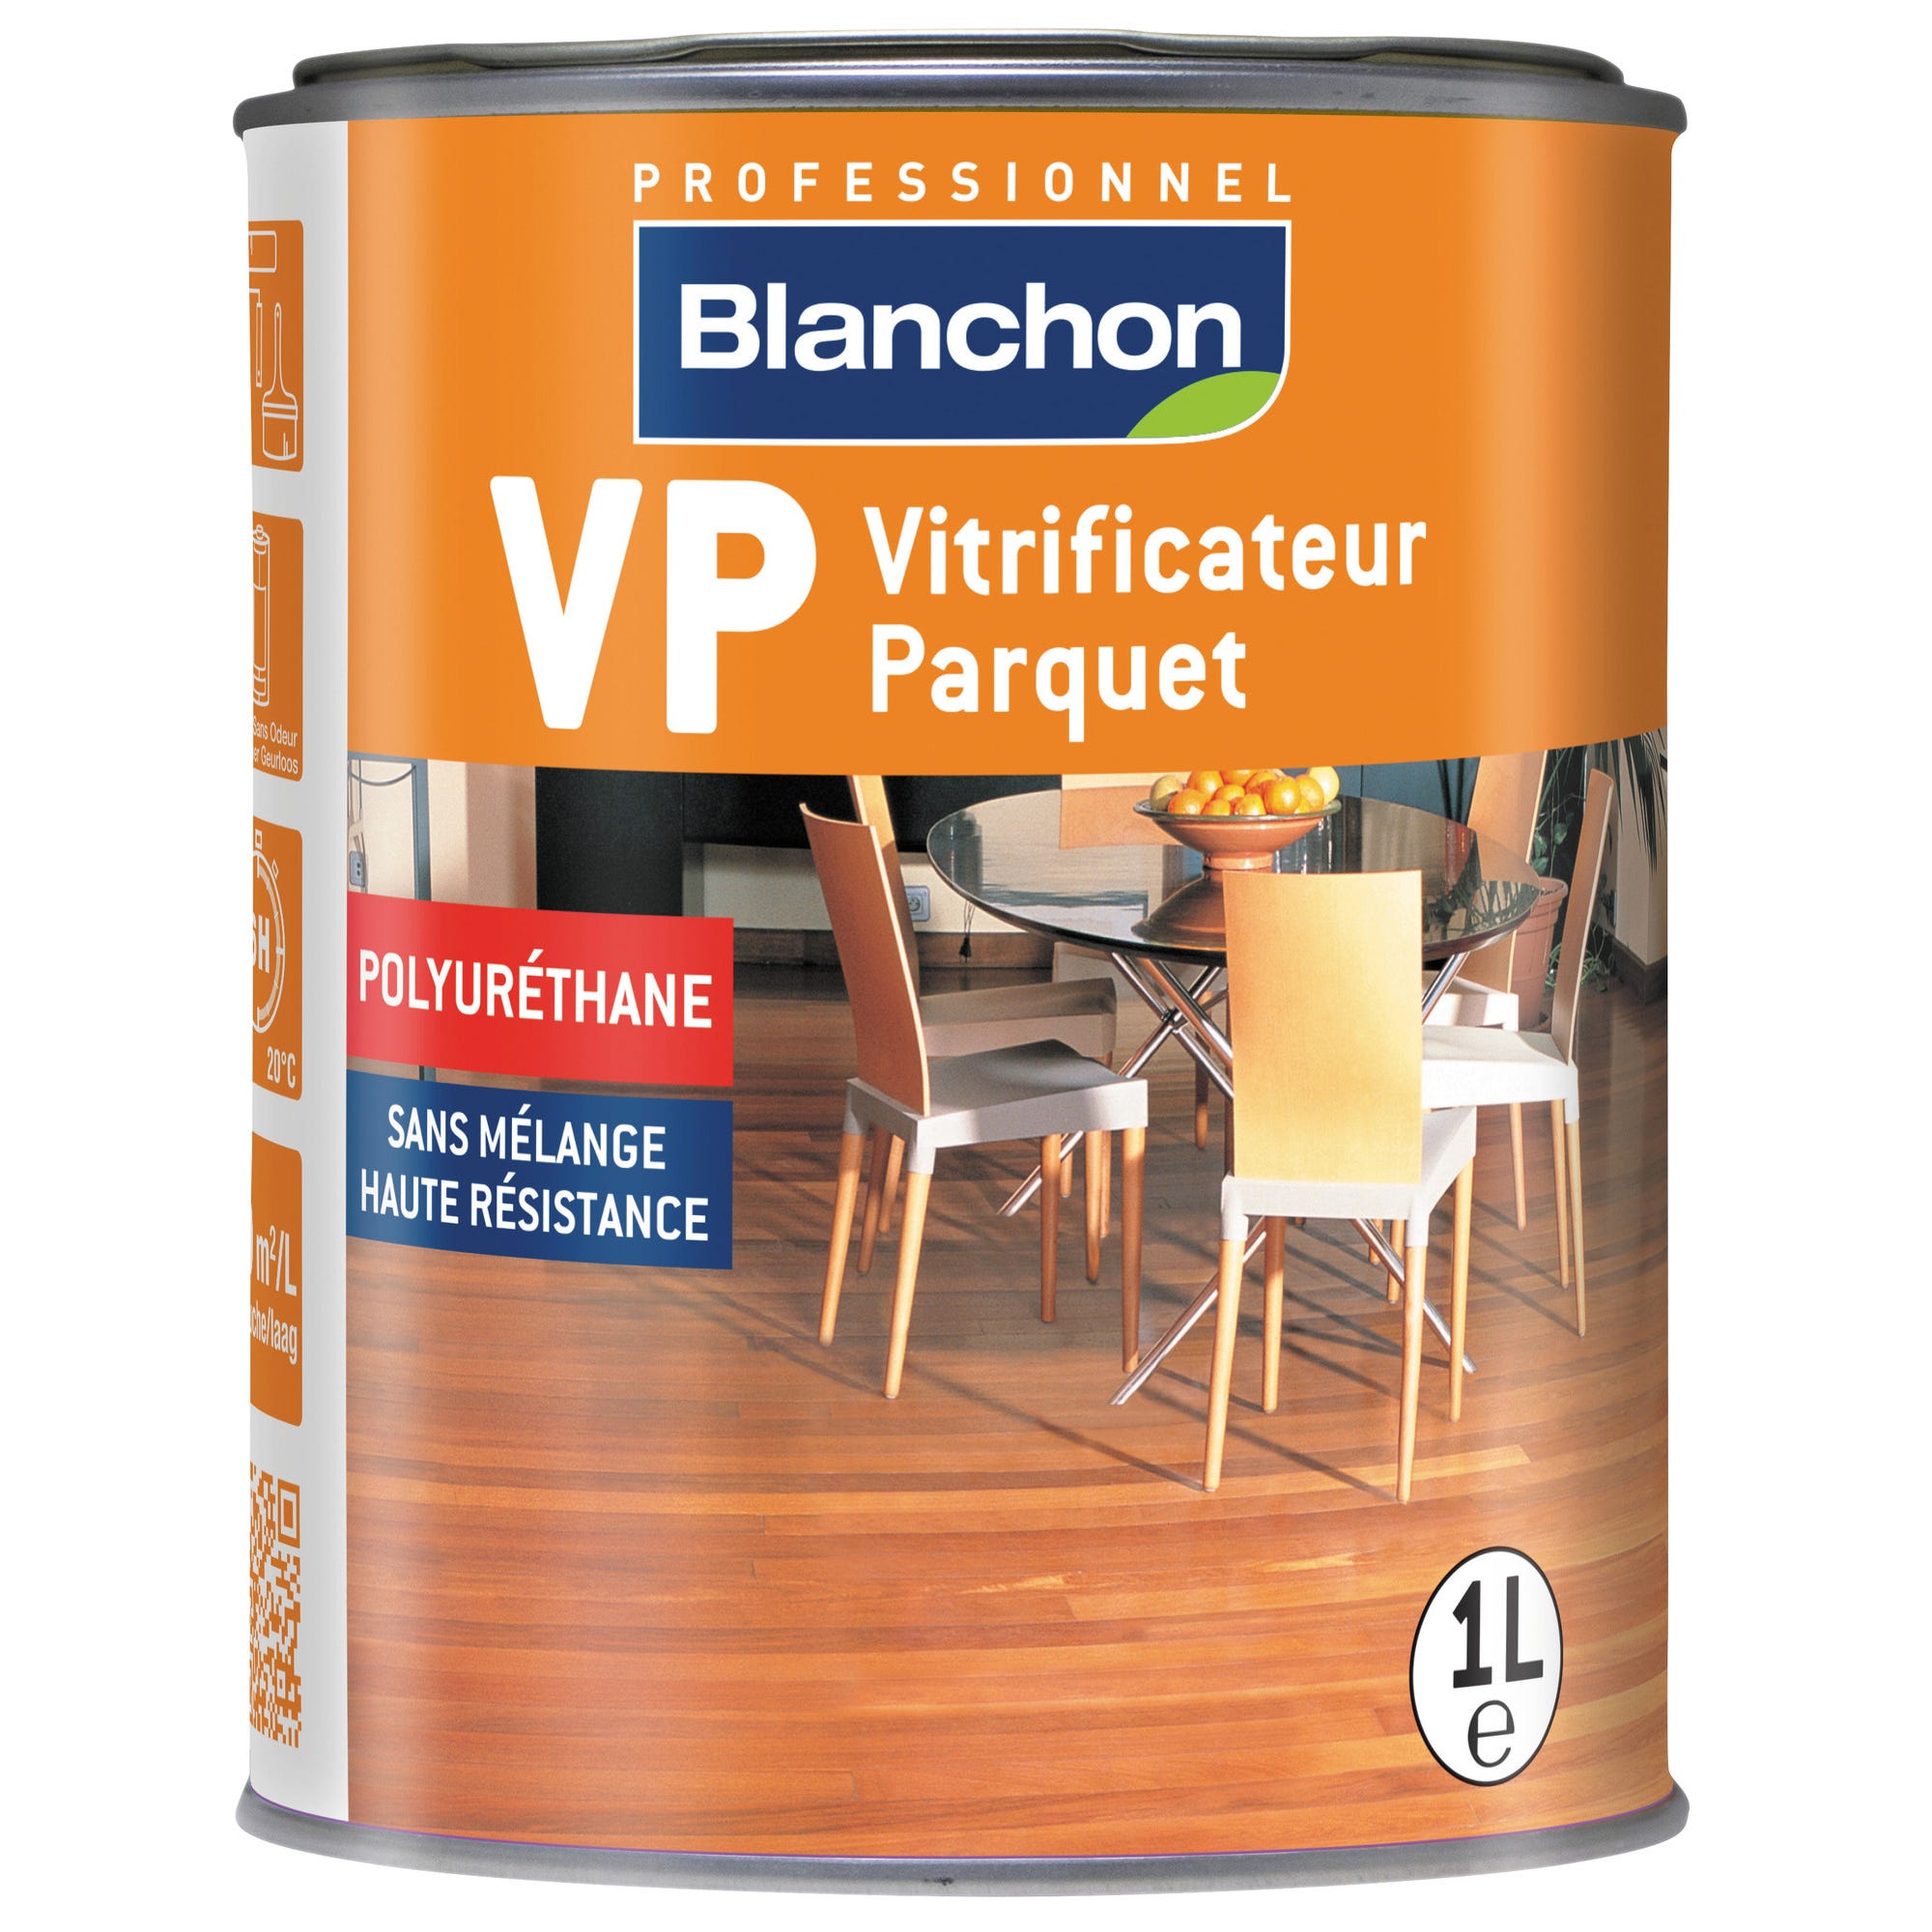 Vitrificateur parquet satiné 1 L VP - BLANCHON 0